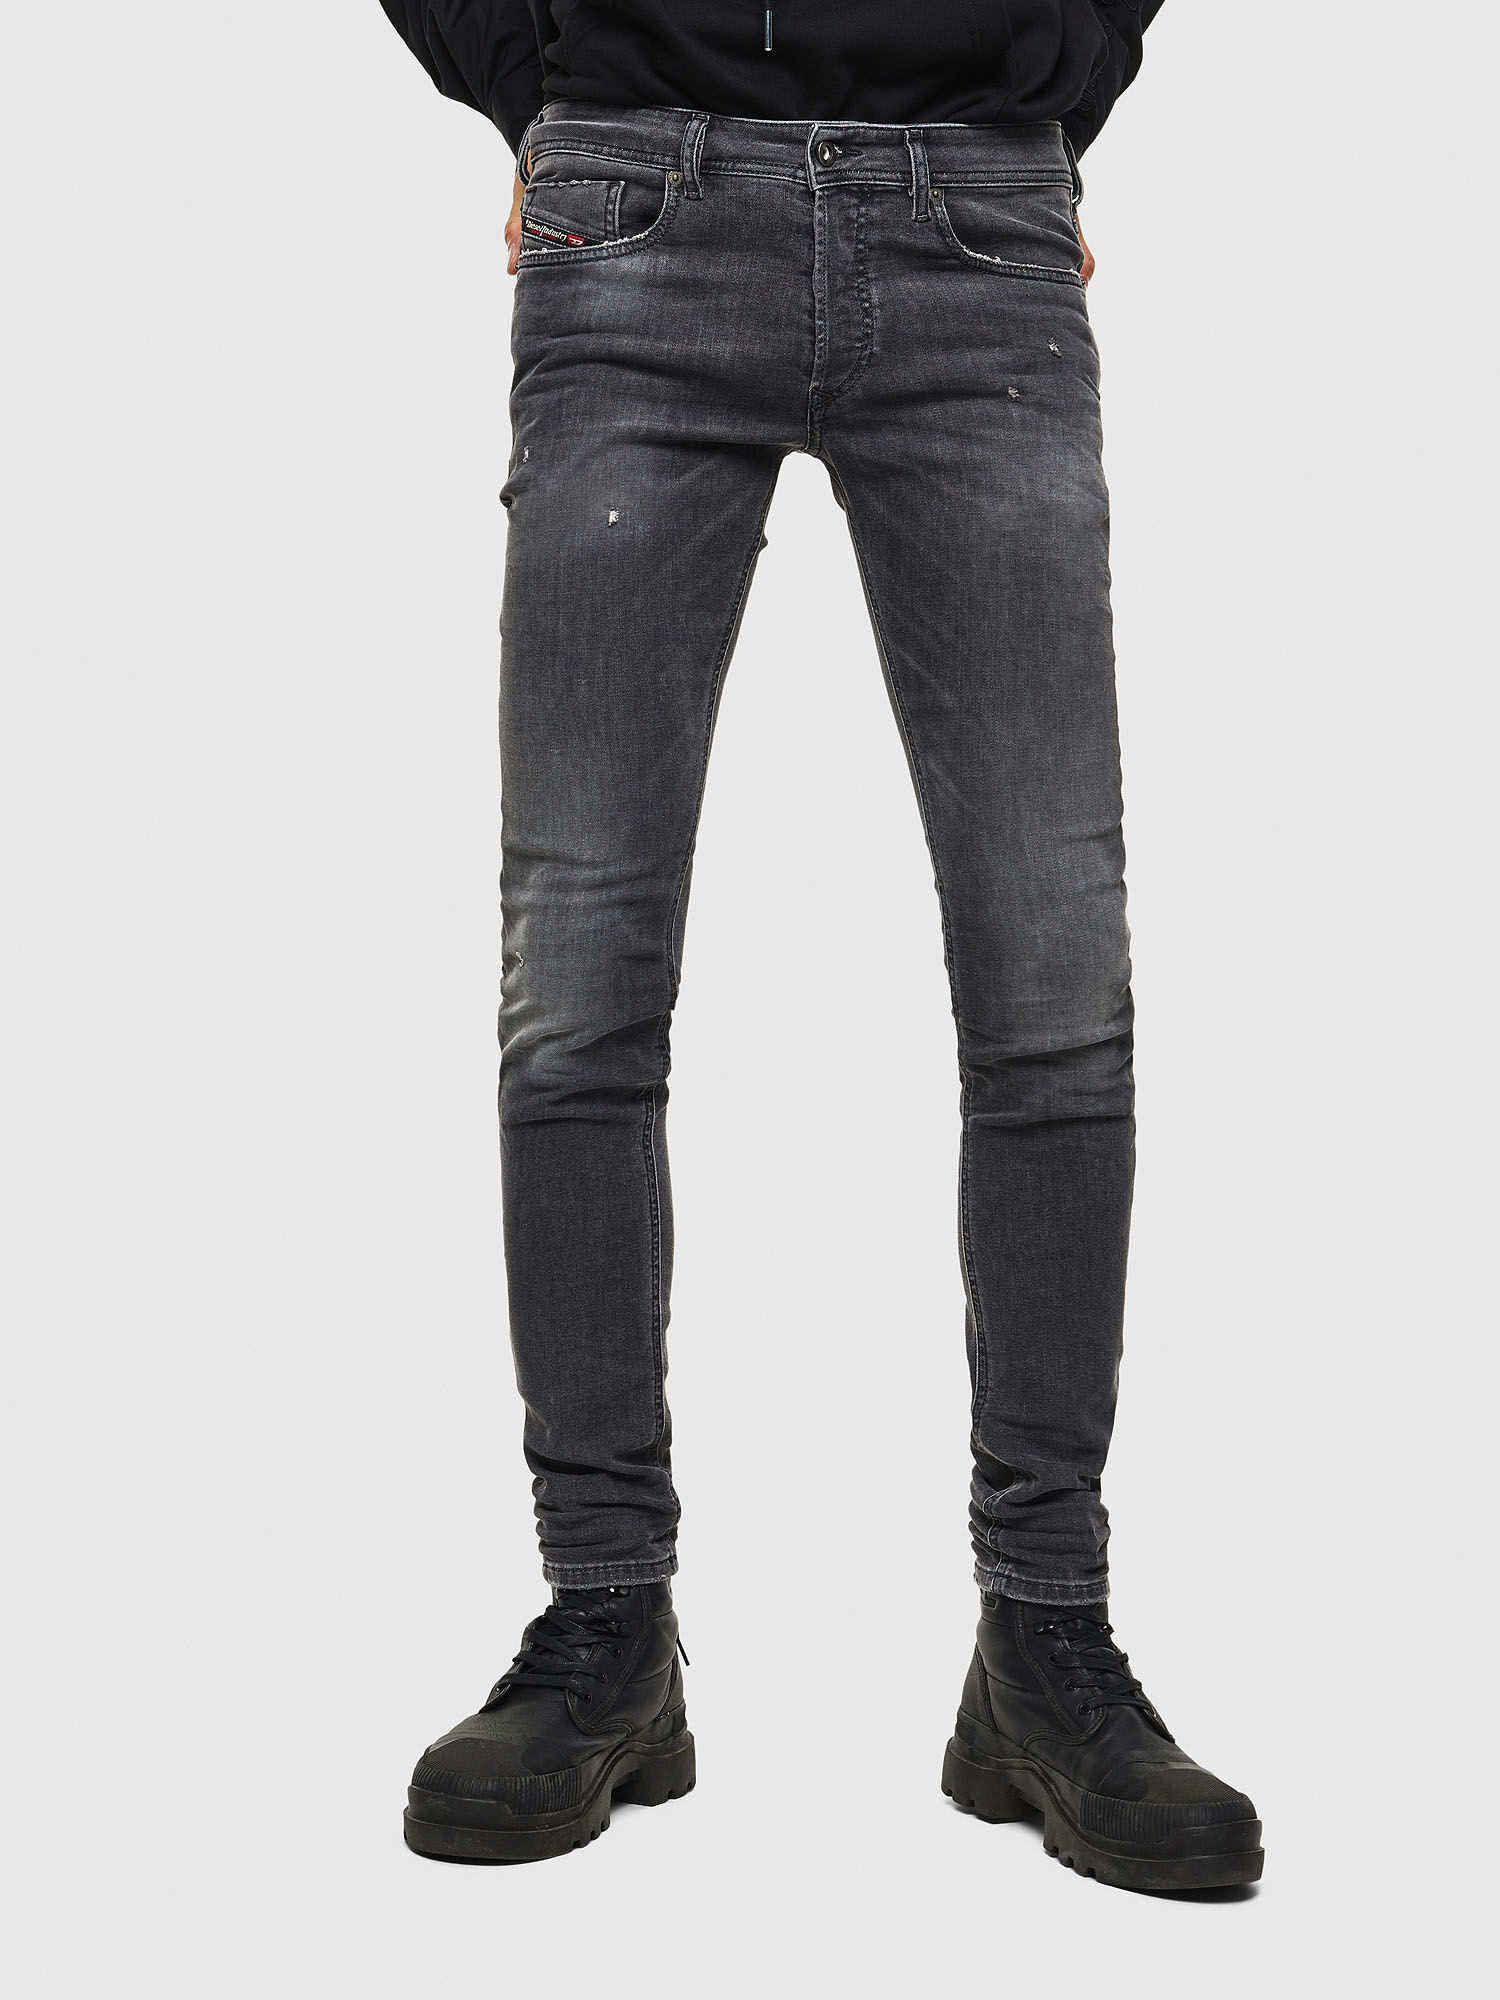 Skinny Black/Dark grey Jeans | Diesel